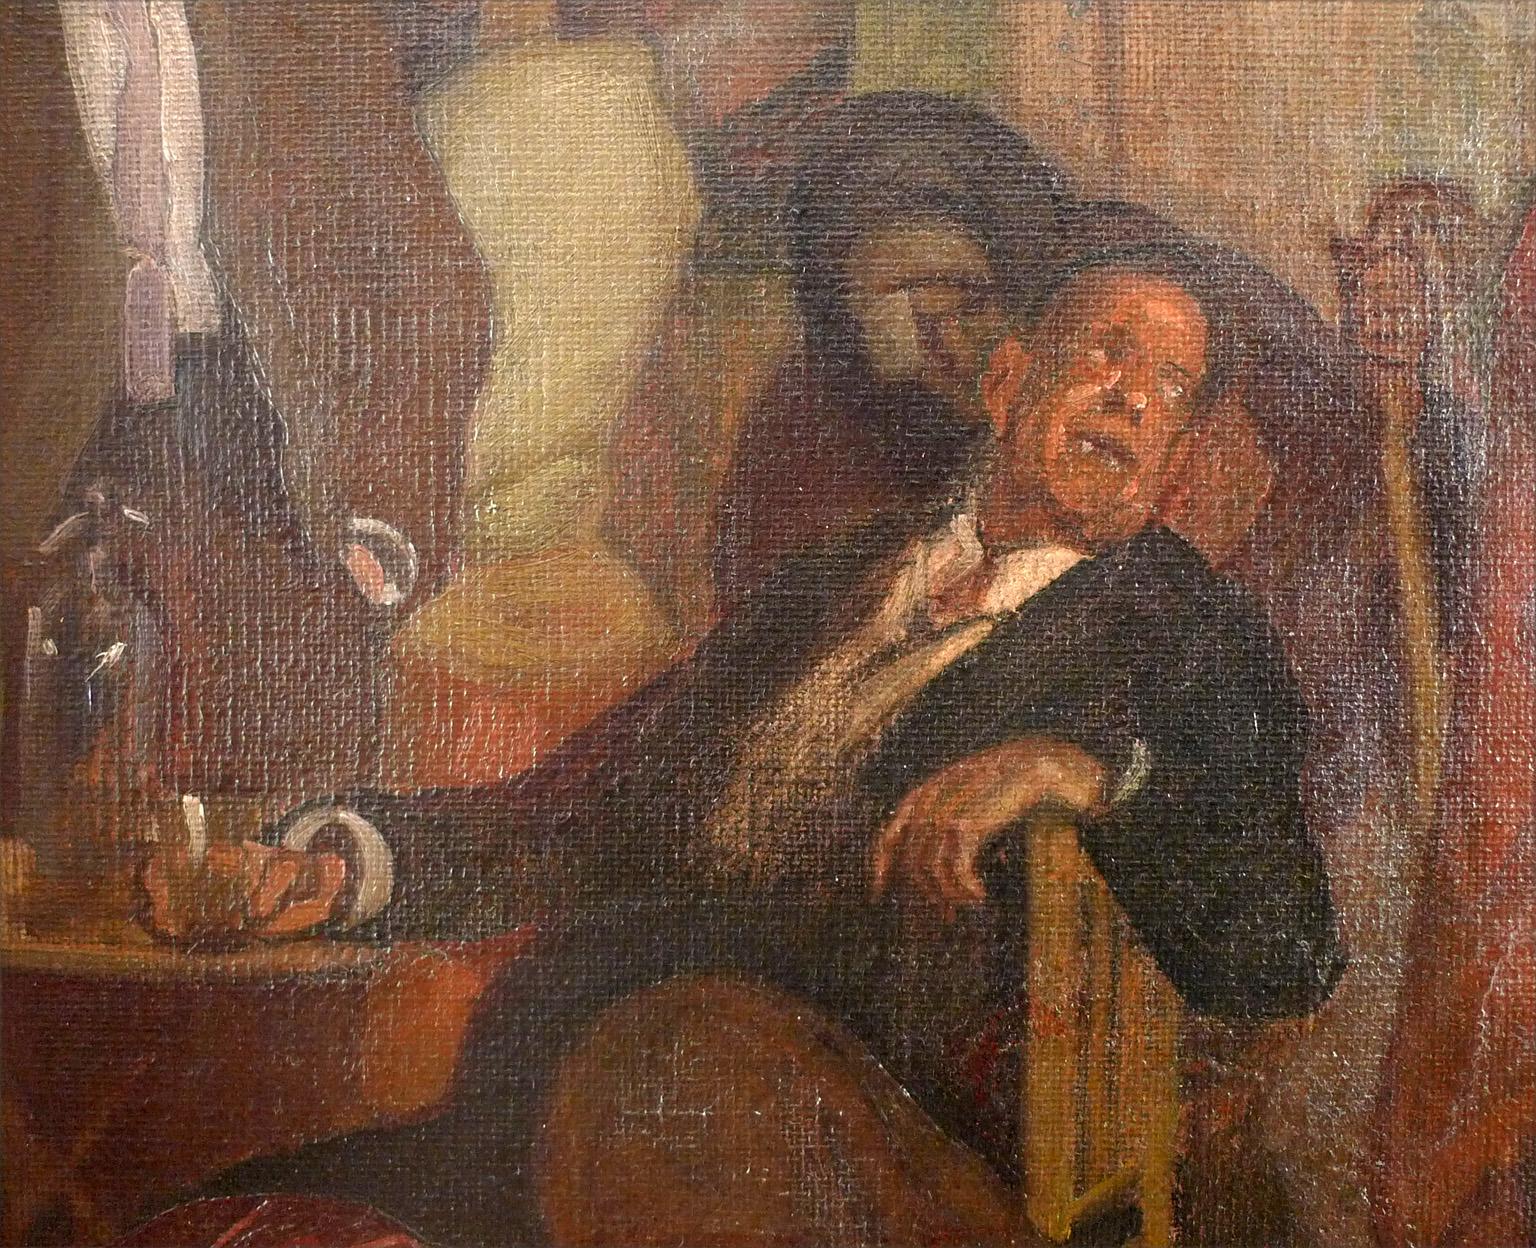 Día de mercado, Oil on Canvas by José María López Mezquita 2